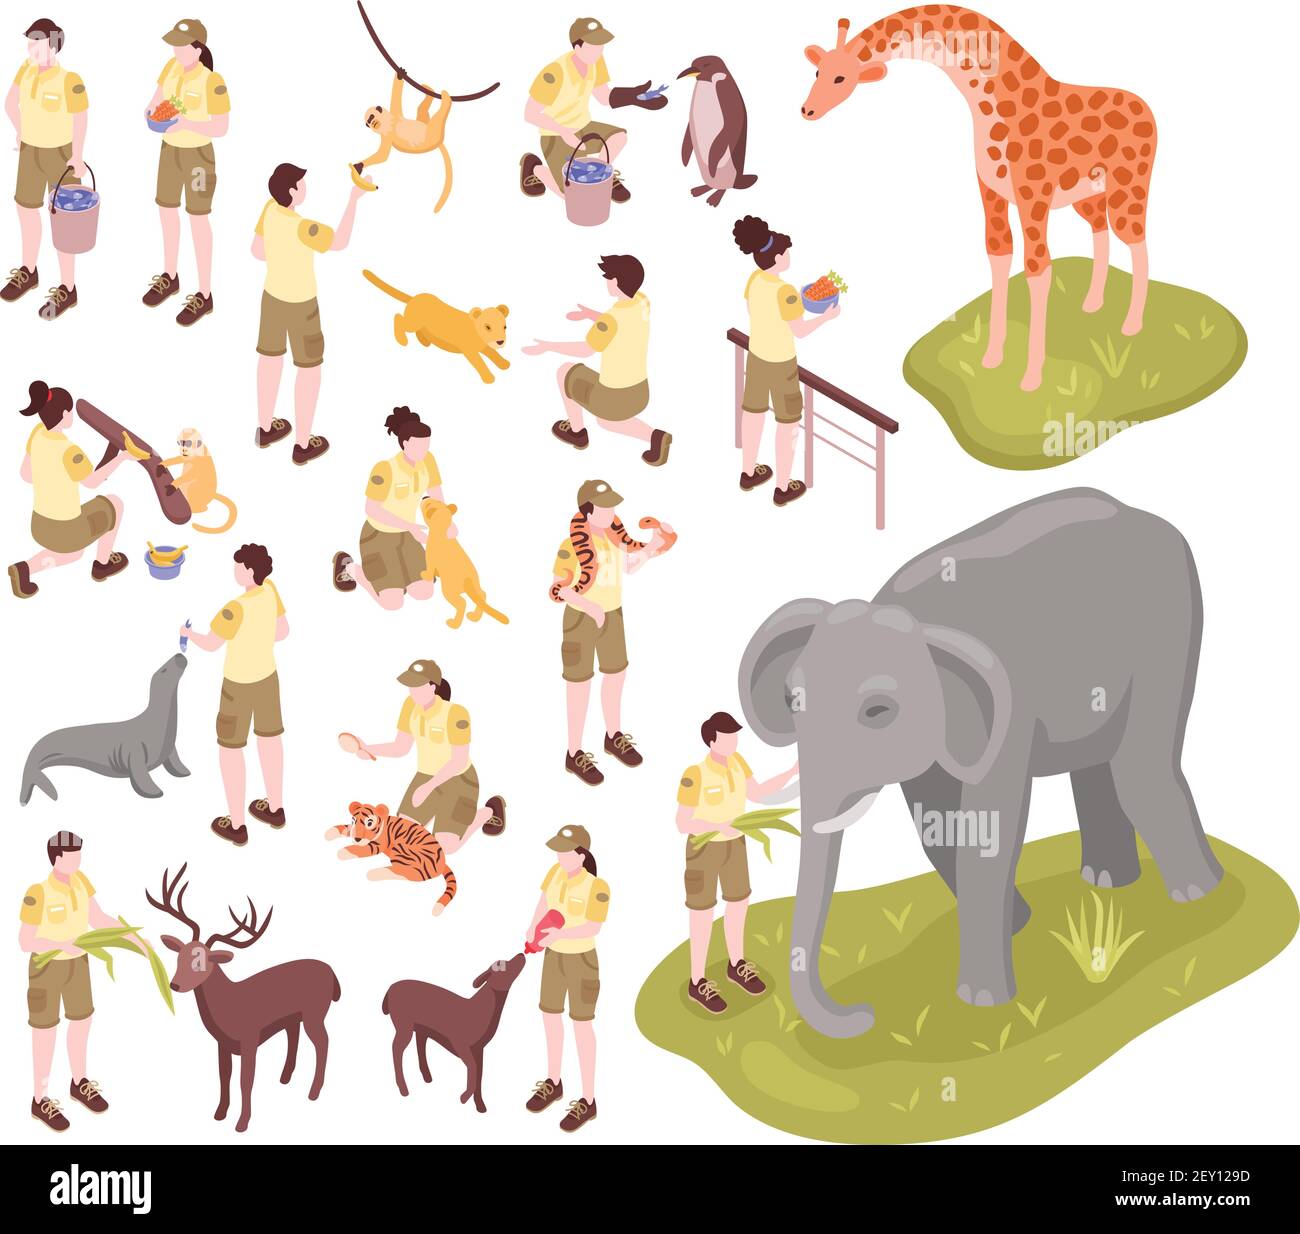 Ensemble de travailleurs de zoo isométrique de personnages humains isolés de zoo les gardiens et les animaux sur une illustration vectorielle d'arrière-plan vierge Illustration de Vecteur